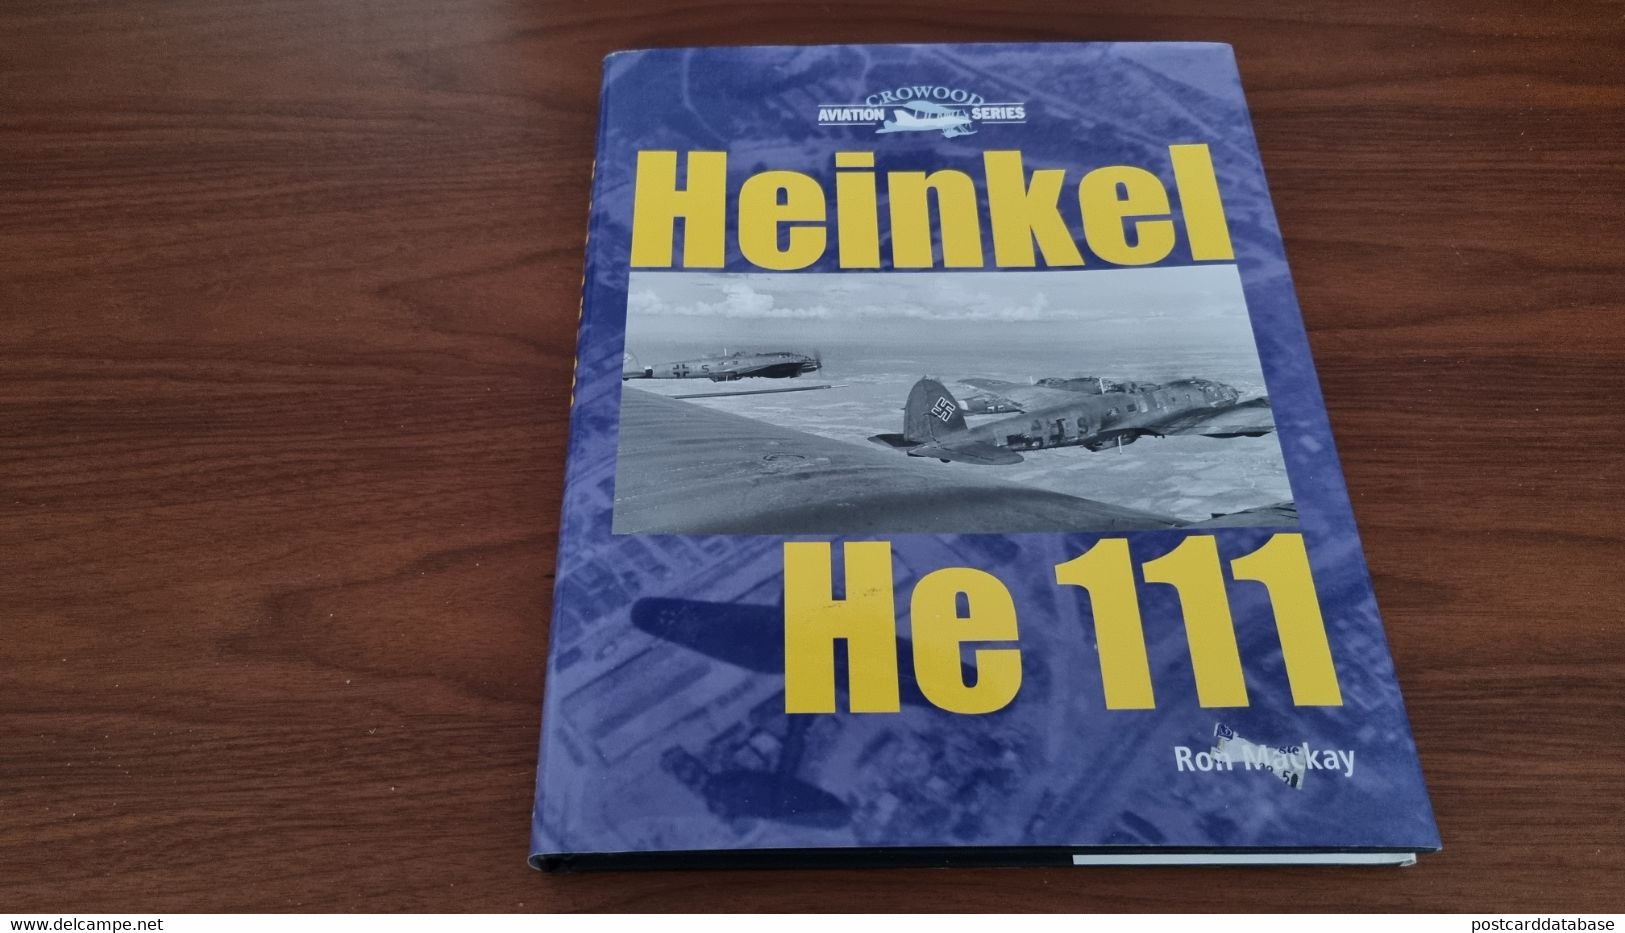 Heinkel He 111 - Aviation Series - Ron Mackay - Guerre 1939-45